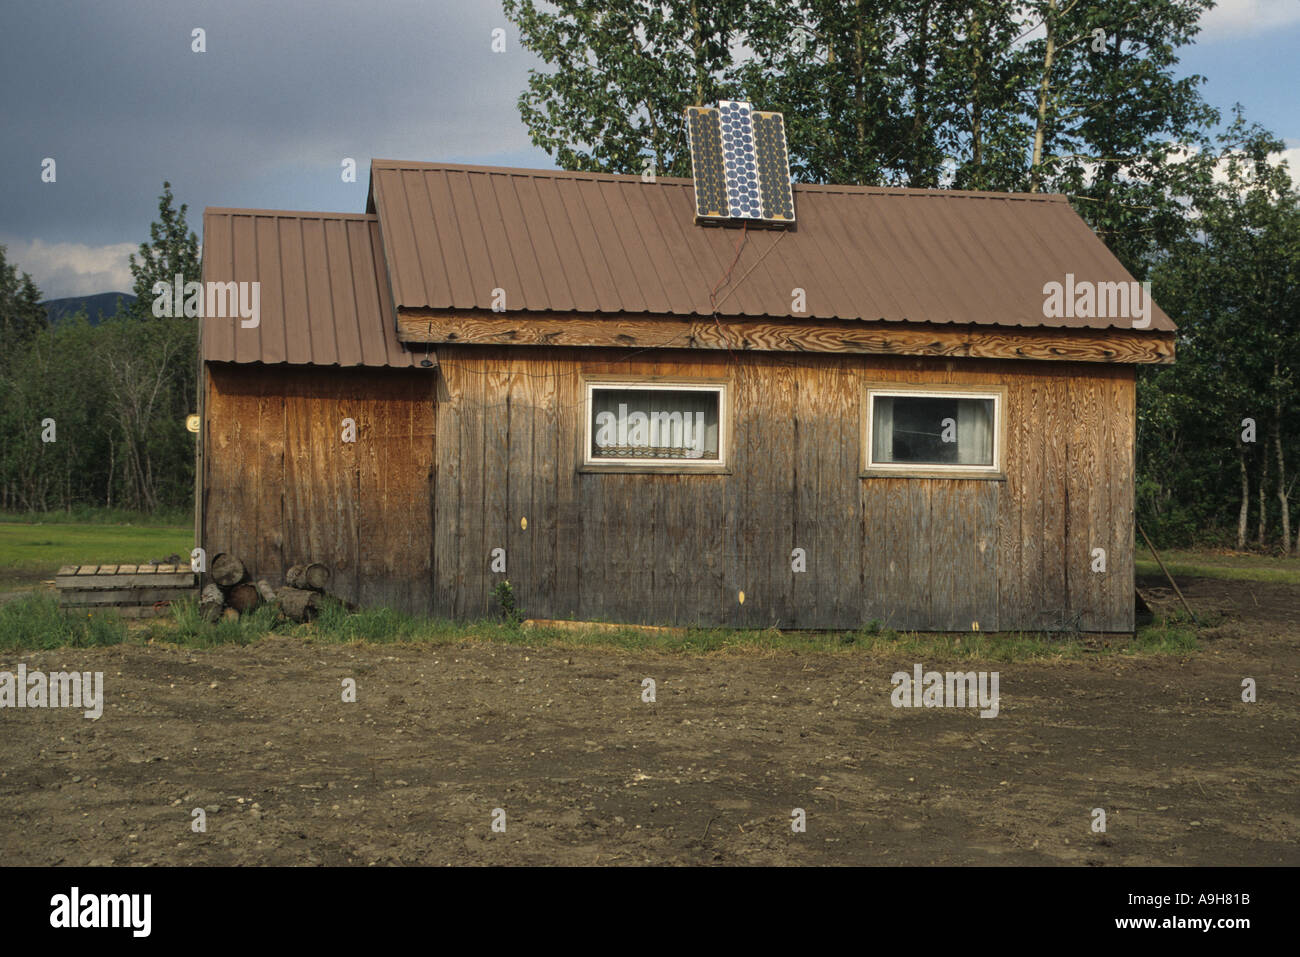 L'énergie solaire dans la ville d'or Wiseman au-delà du cercle arctique, cette cabine utilise l'énergie solaire pour chauffer l'eau Banque D'Images